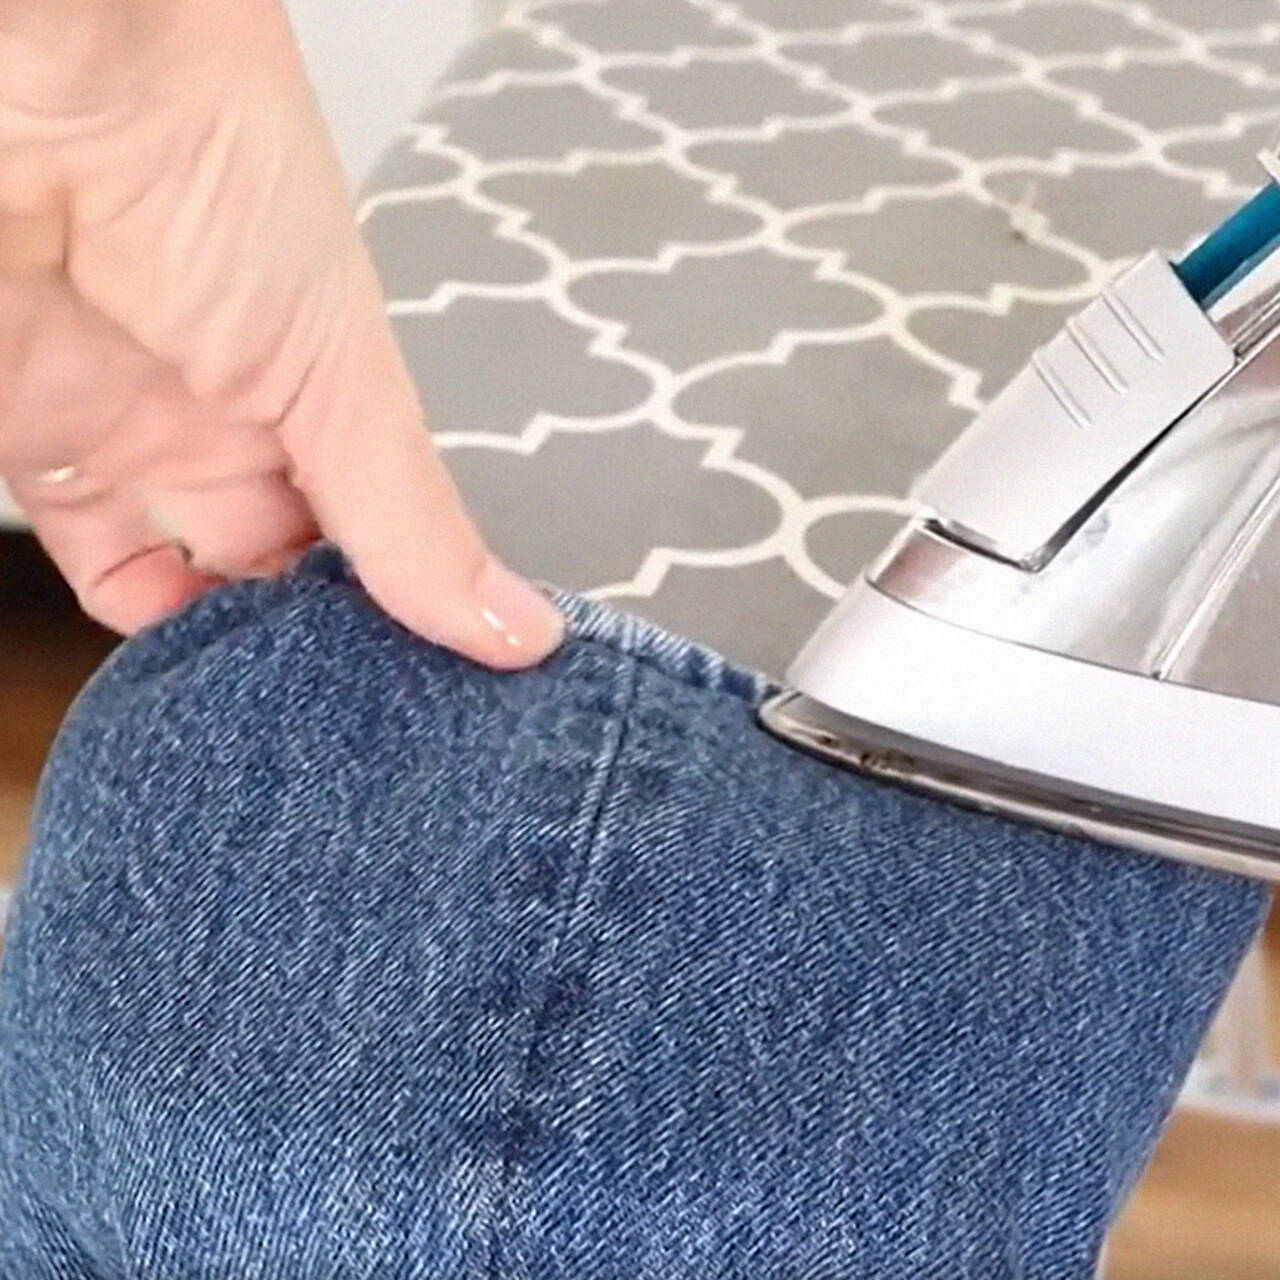 Полезный лайфхак: как подшить джинсы